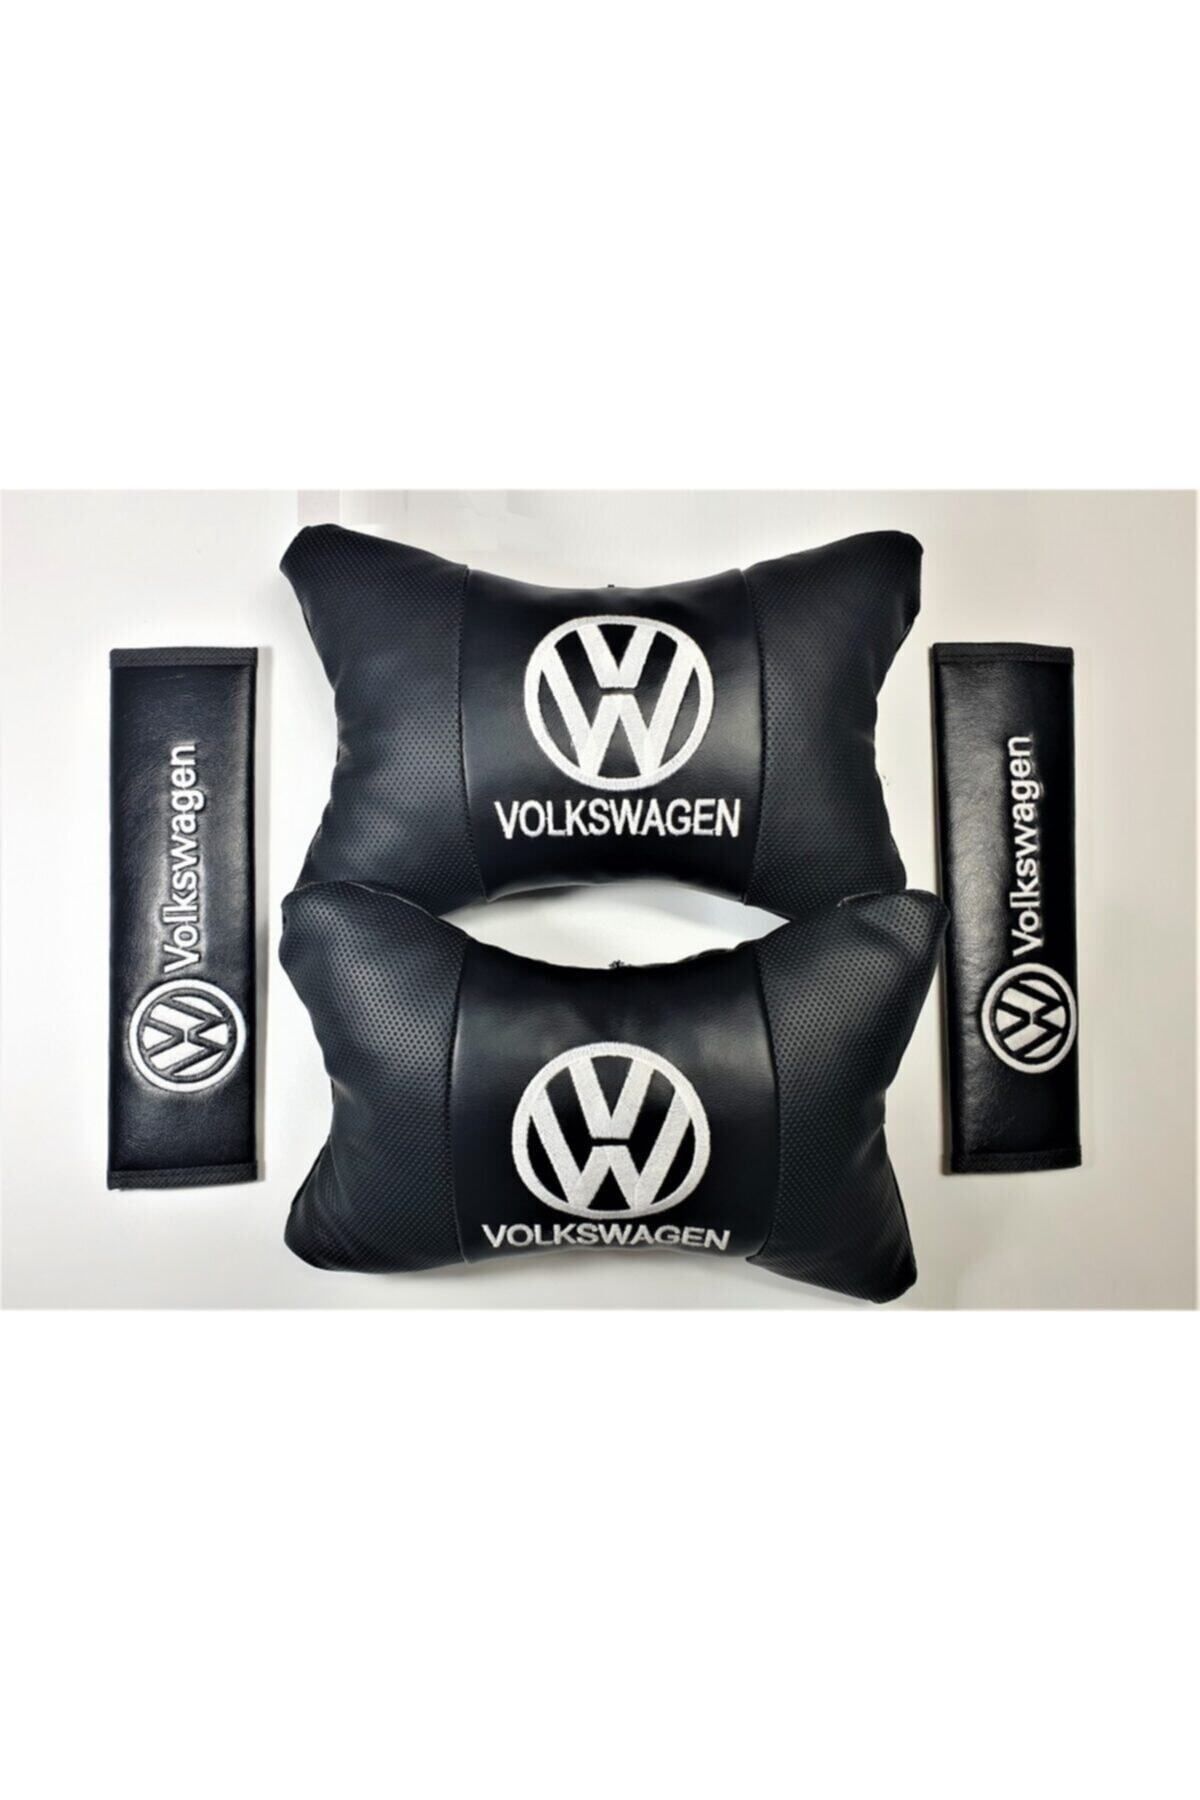 BsElektronik Volkswagen Uyumlu Papyon Yastık Boyun Yastığı+emniyet Kemer Kılıfı Takım